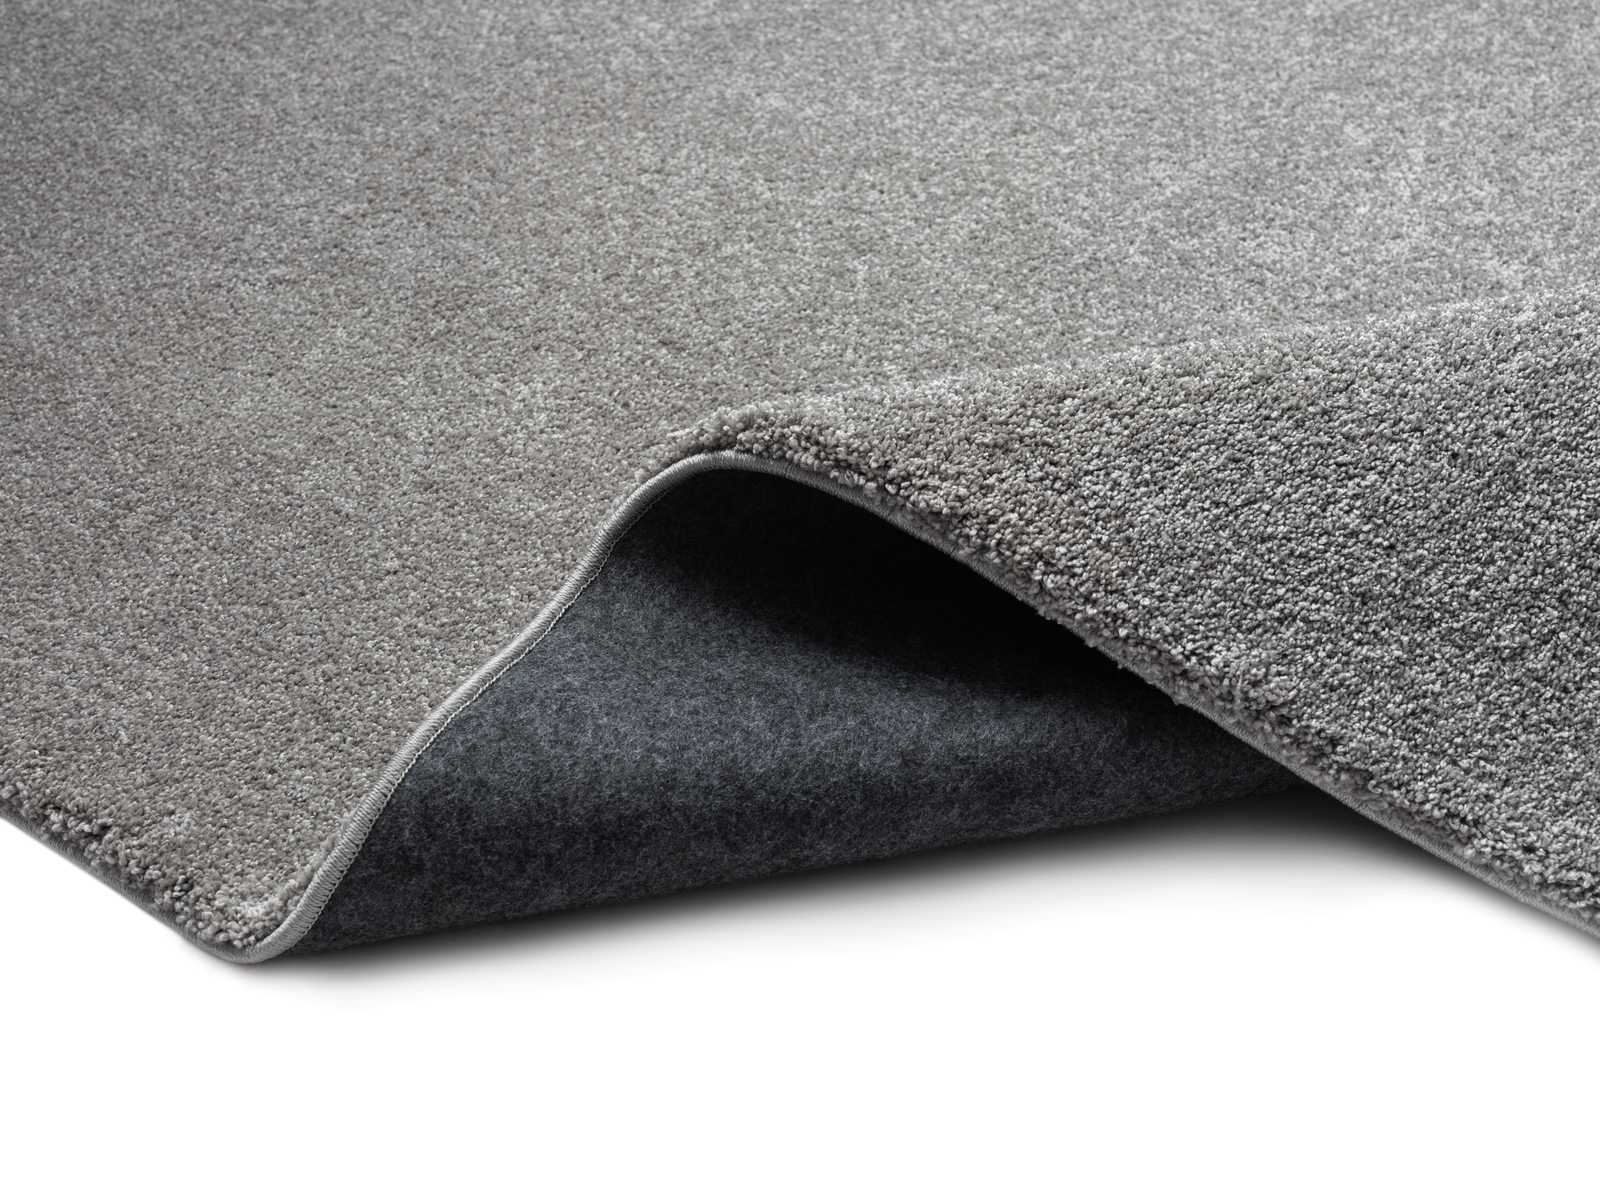             Flauschiger Kurzflor Teppich in Grau – 170 x 120 cm
        